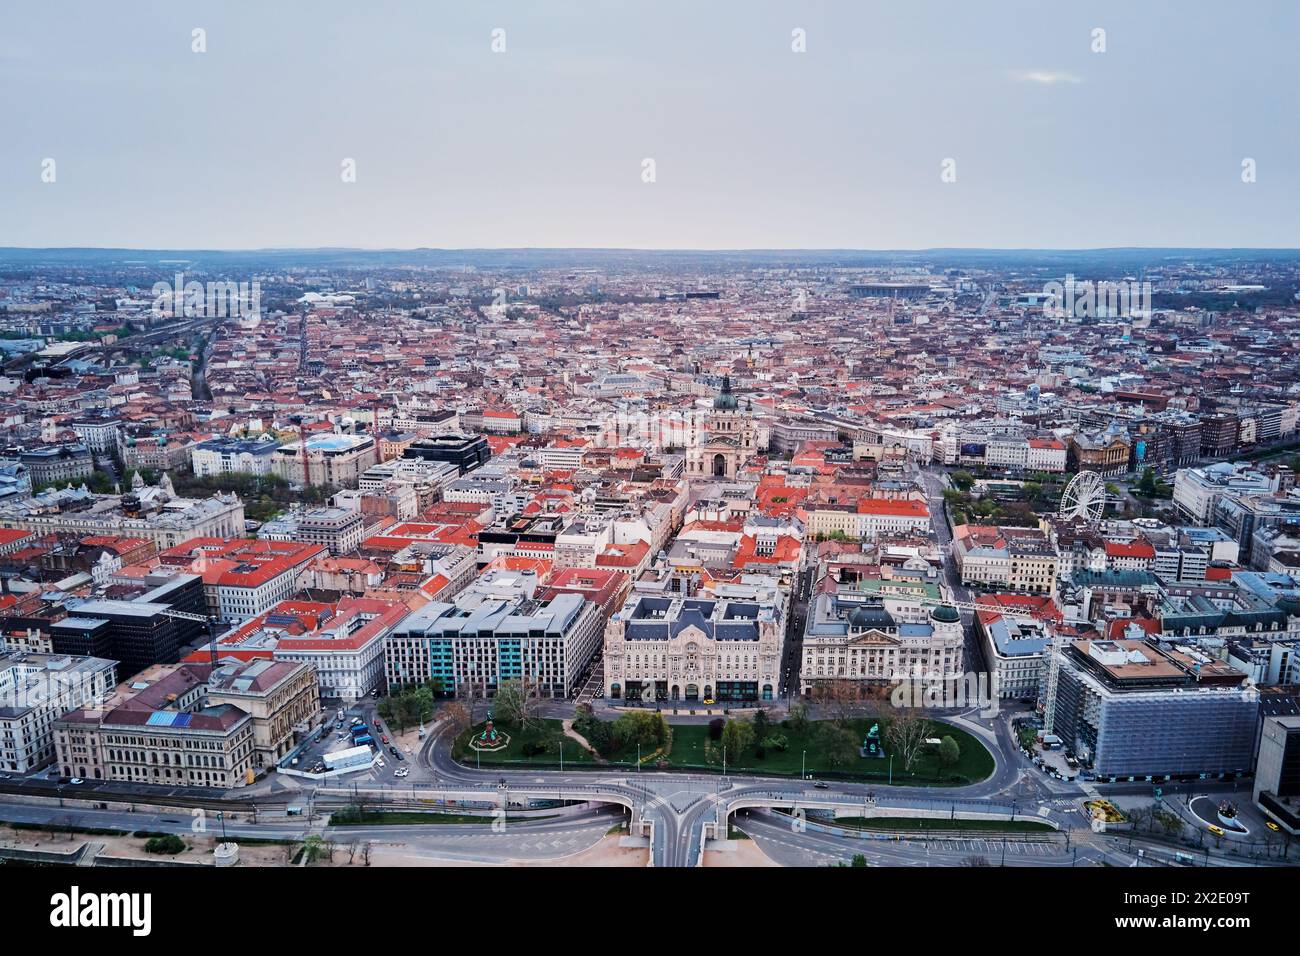 Vue panoramique sur les toits de Budapest. Vue aérienne de la capitale de la Hongrie avec des bâtiments historiques et des monuments célèbres Banque D'Images